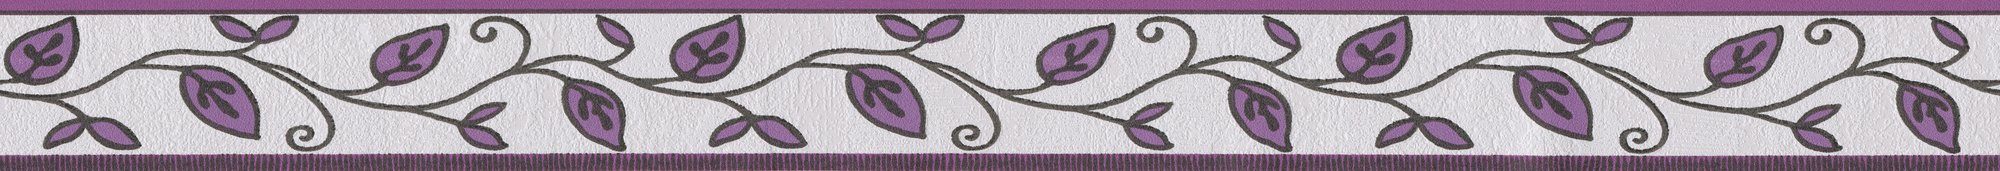 Borders, Création Retro, Selbstklebend Bordüre lila/creme Blumenranke Bordüre strukturiert, Floral A.S. Only